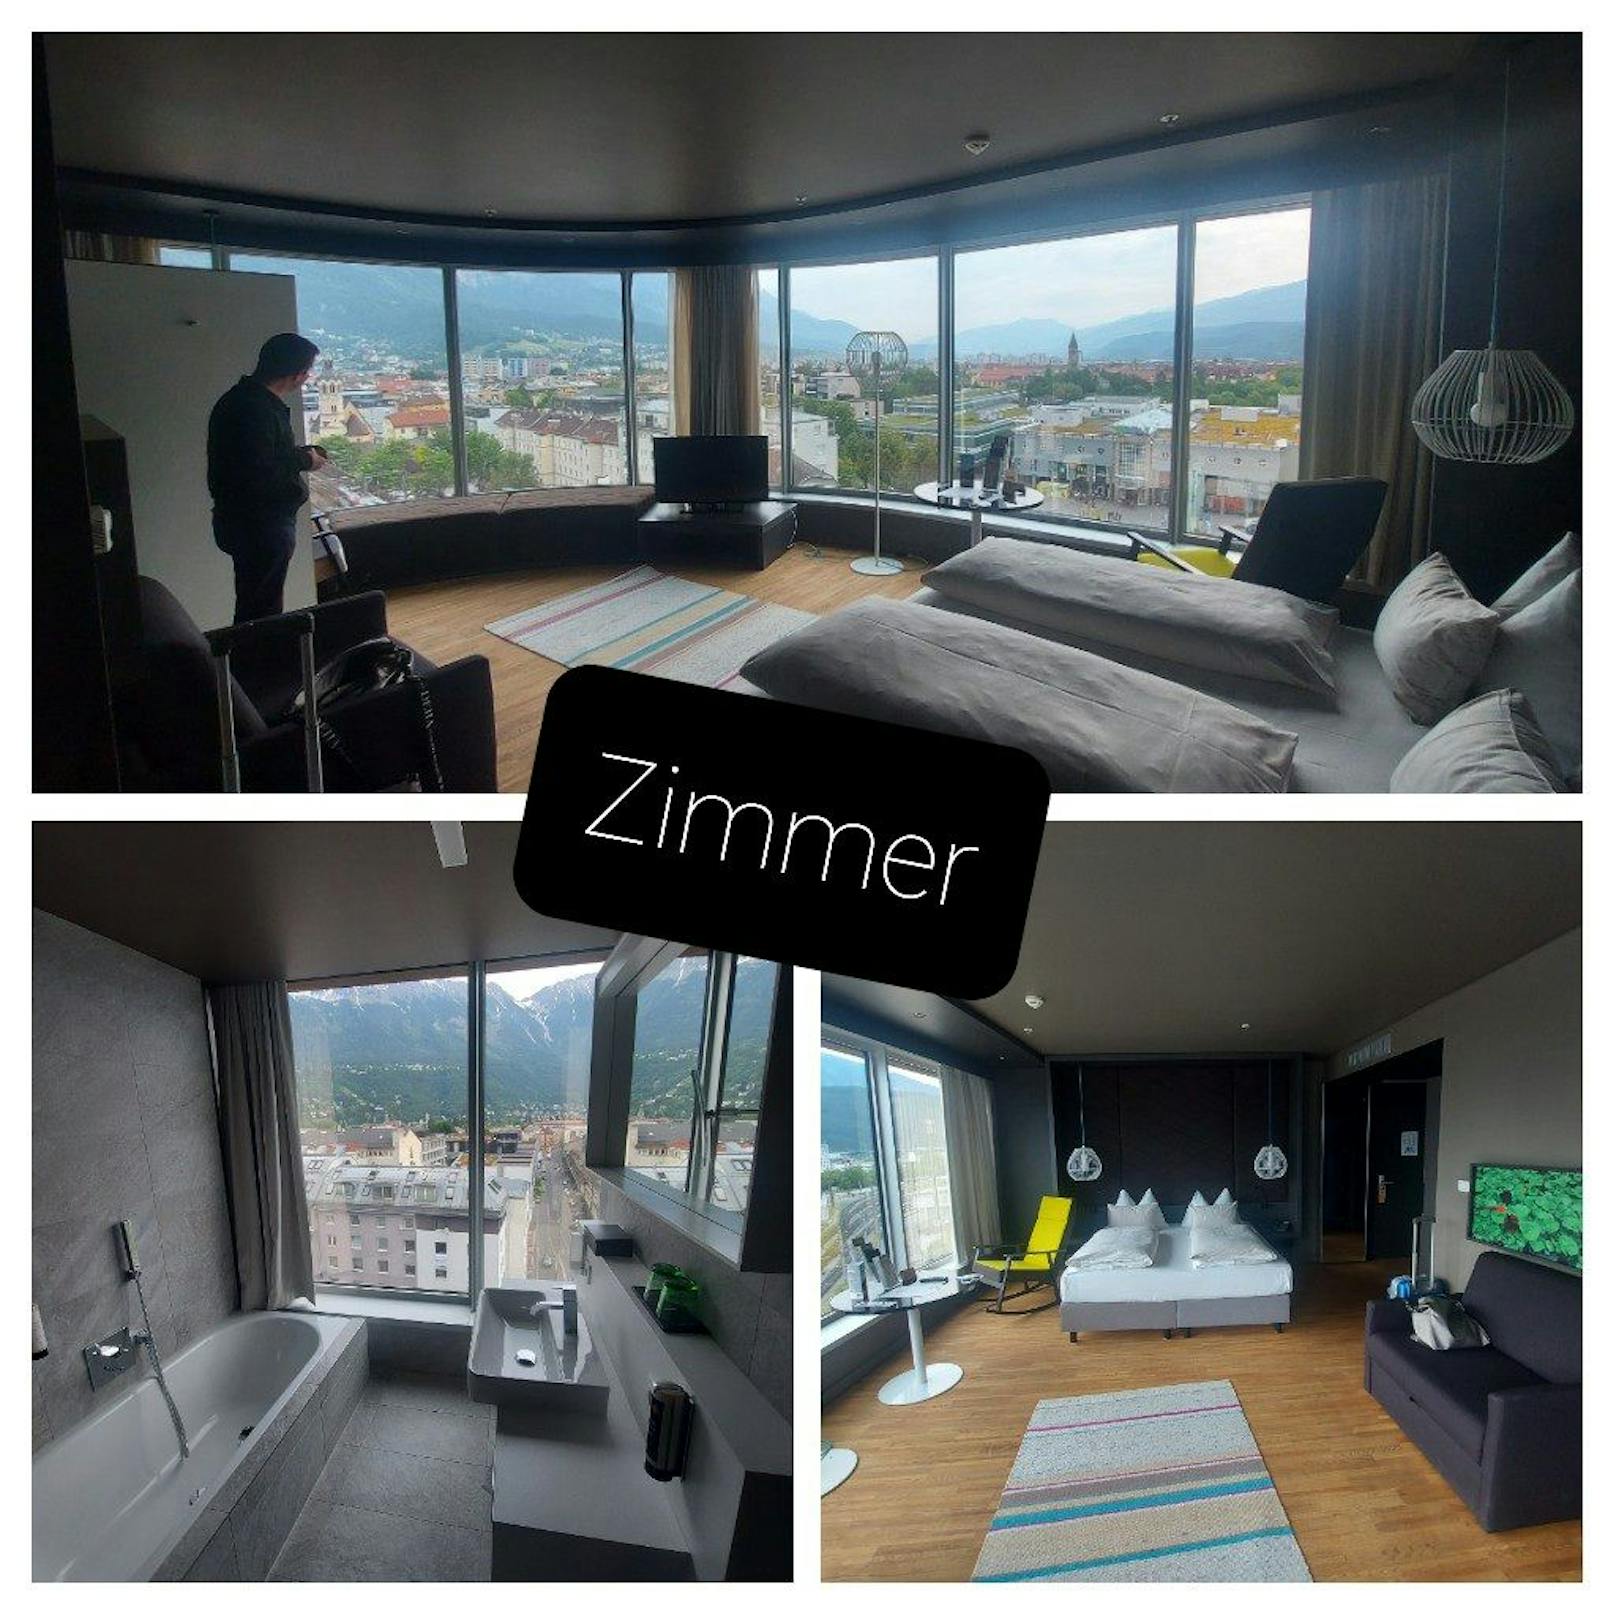 Das wunderschöne Hotelzimmer in "Das aDLERS Design Hotel" in Innsbruck bietet eine einmalige Aussicht auf die Landeshauptstadt Innsbruck.